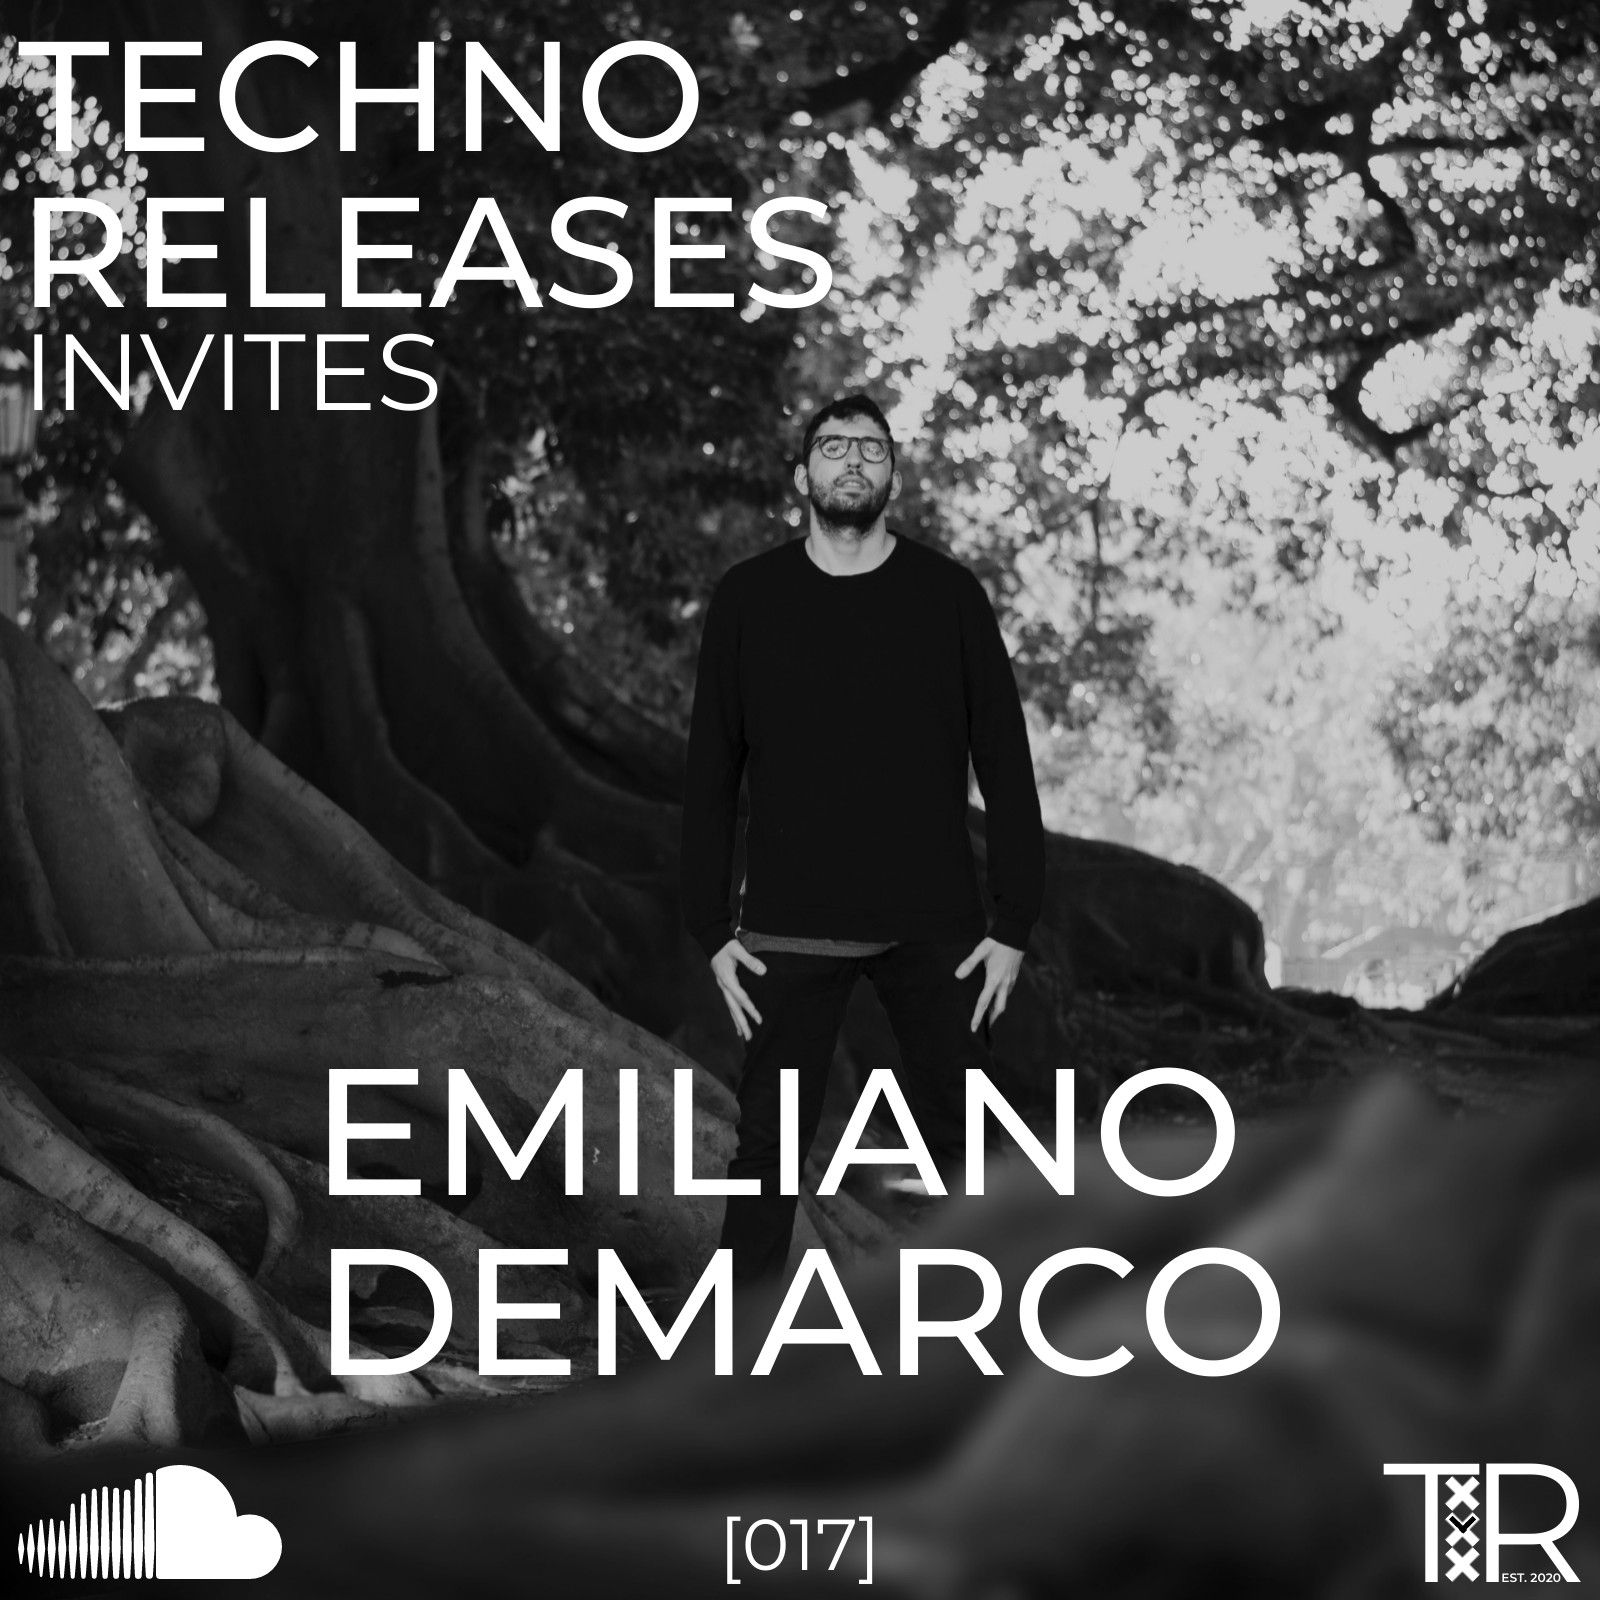 Hent Techno Releases Invites Emiliano Demarco - [017]